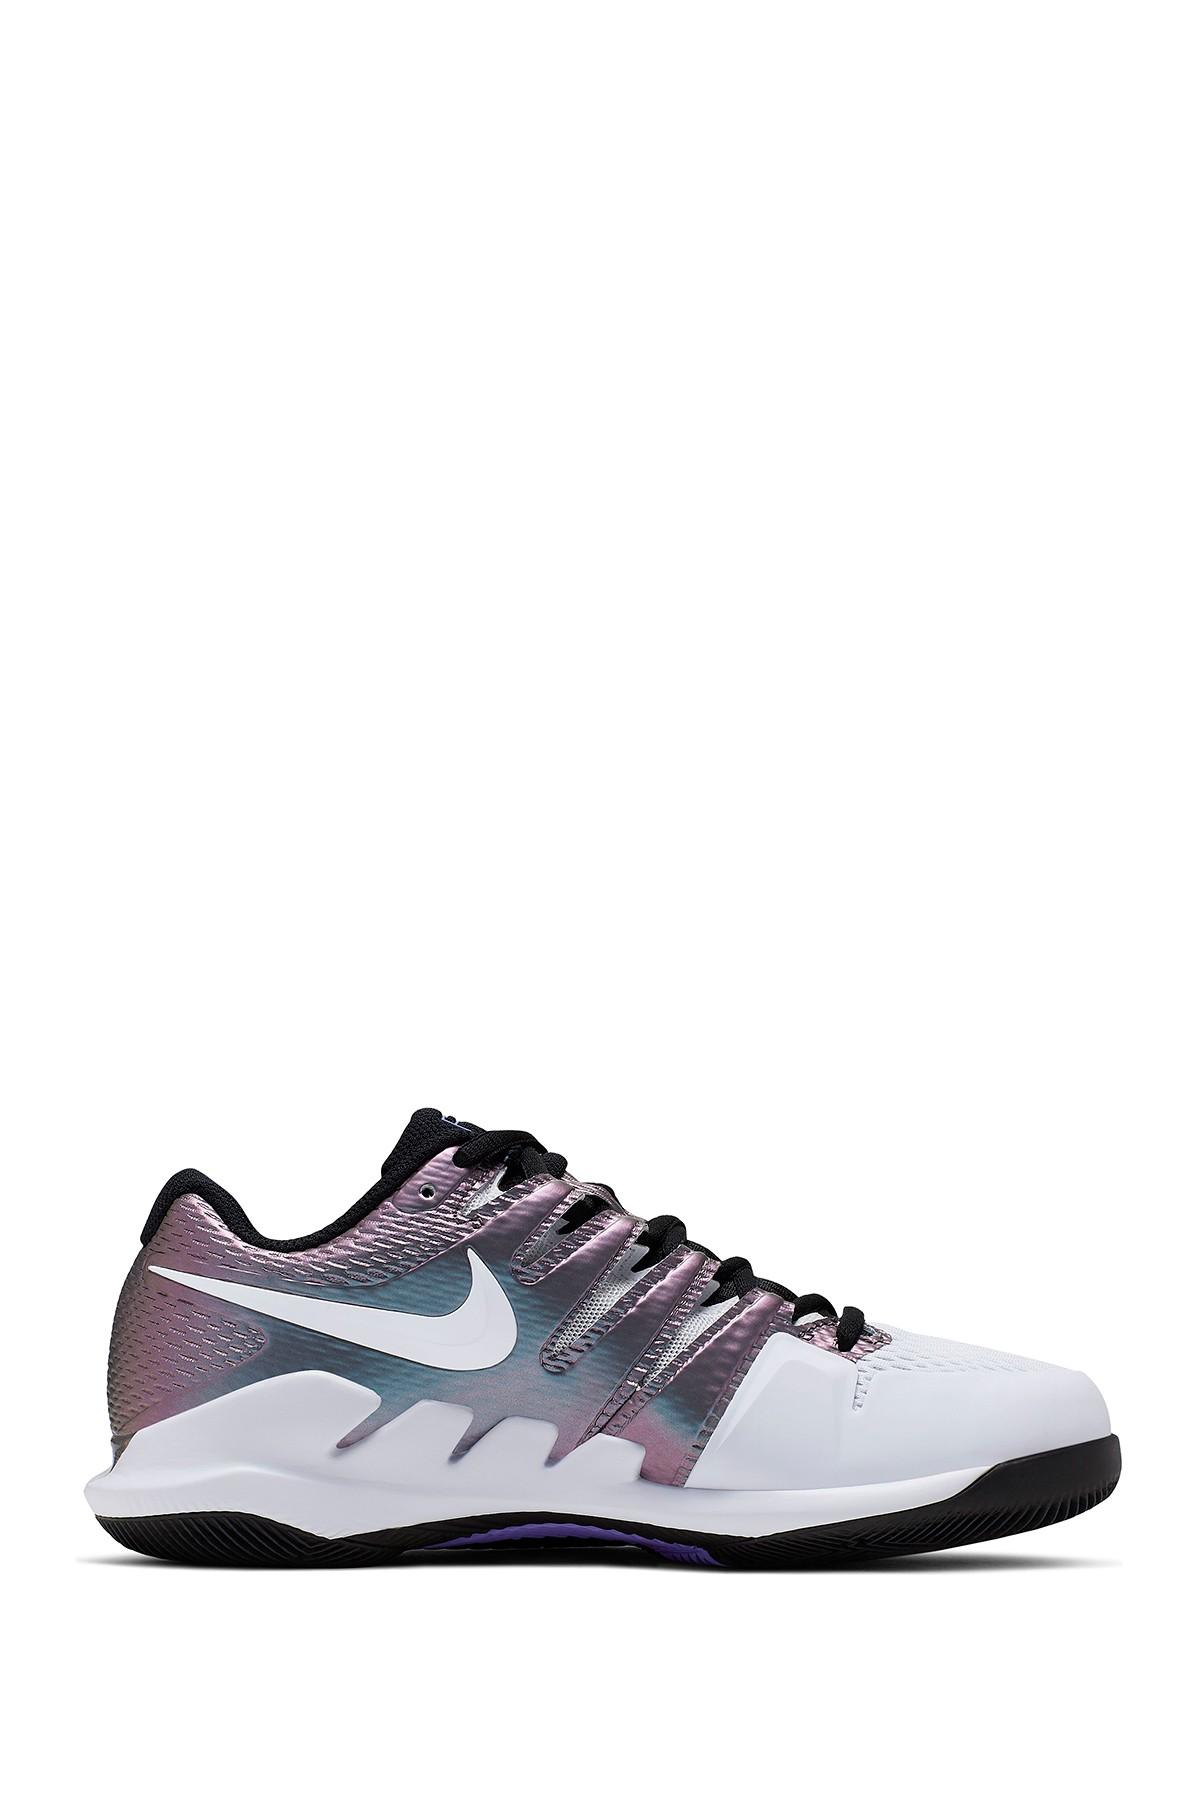 Nike Air Zoom Vapor X Tennis Shoes | Lyst